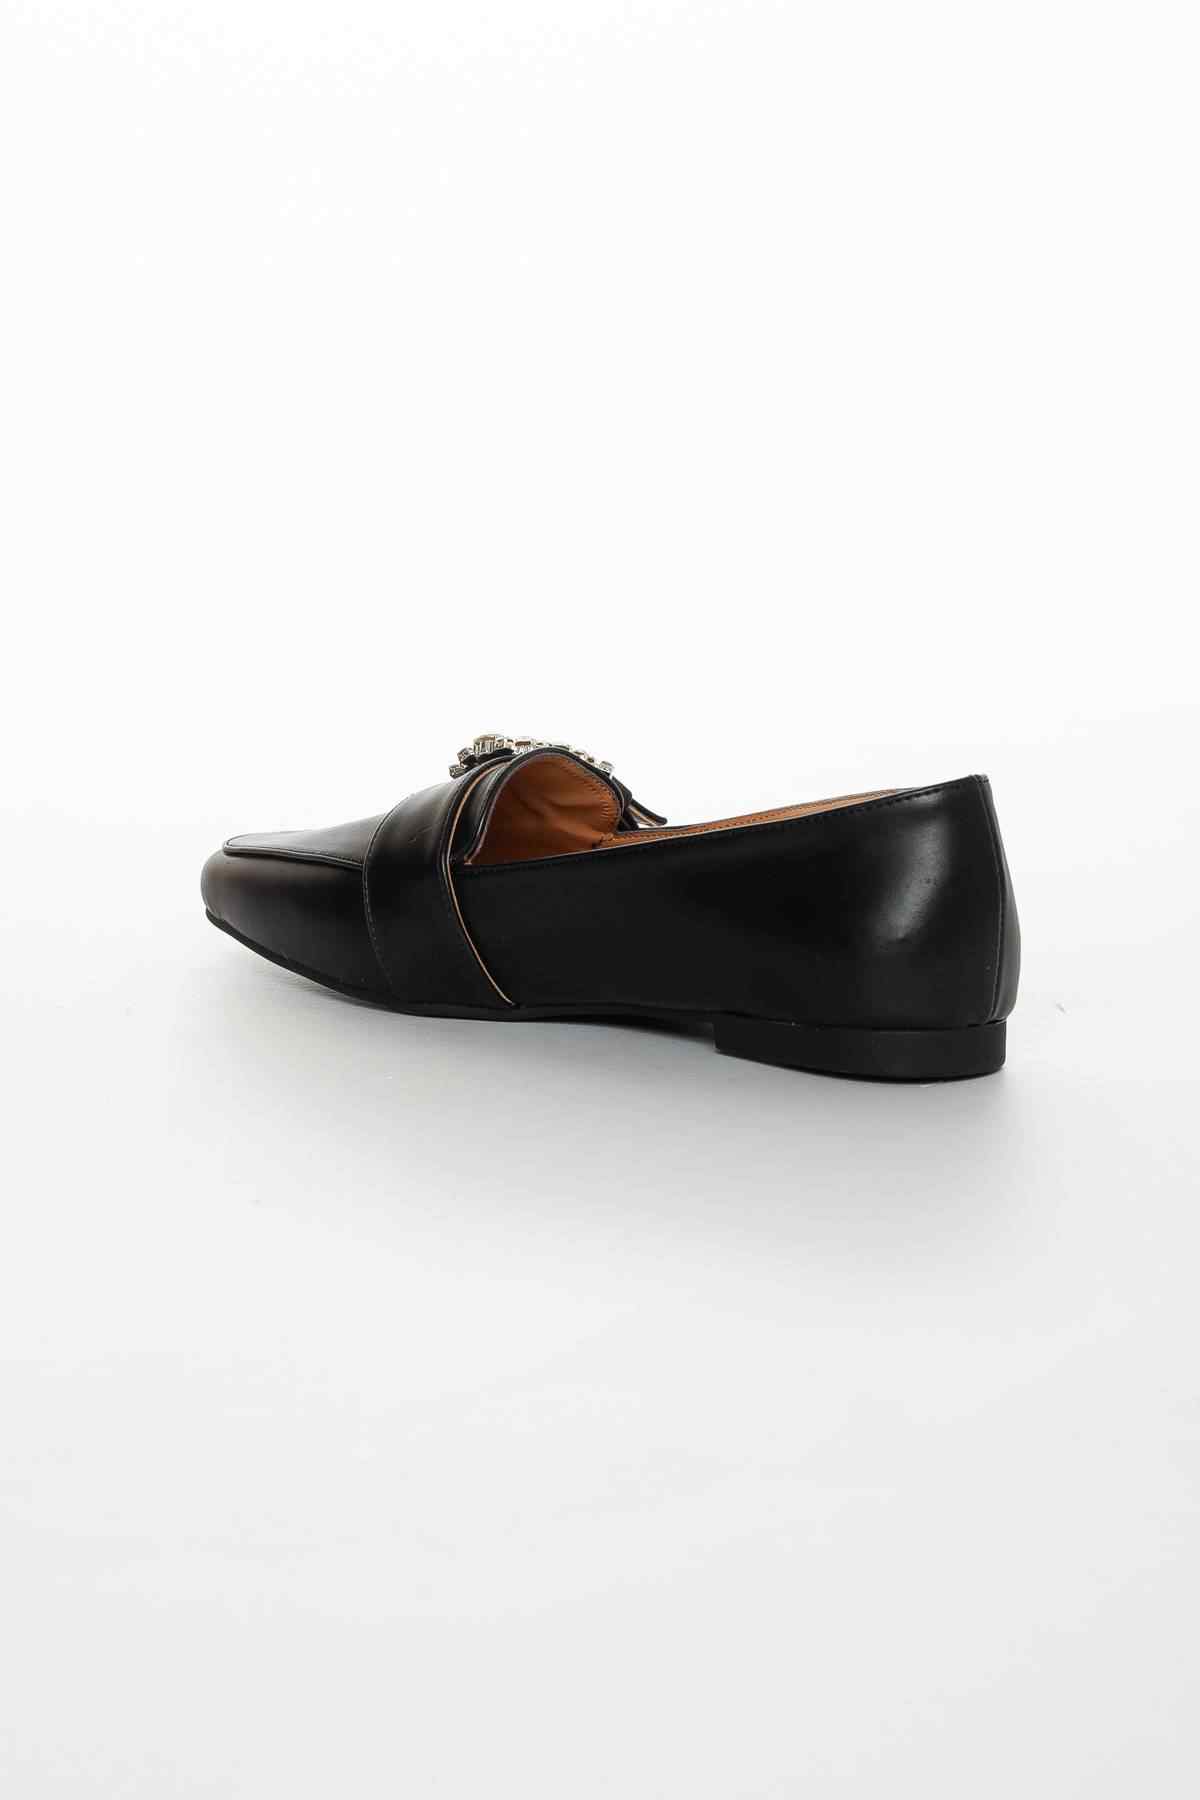 Kadın günlük ayakkabı taşlı  lofer fls0022   Siyah